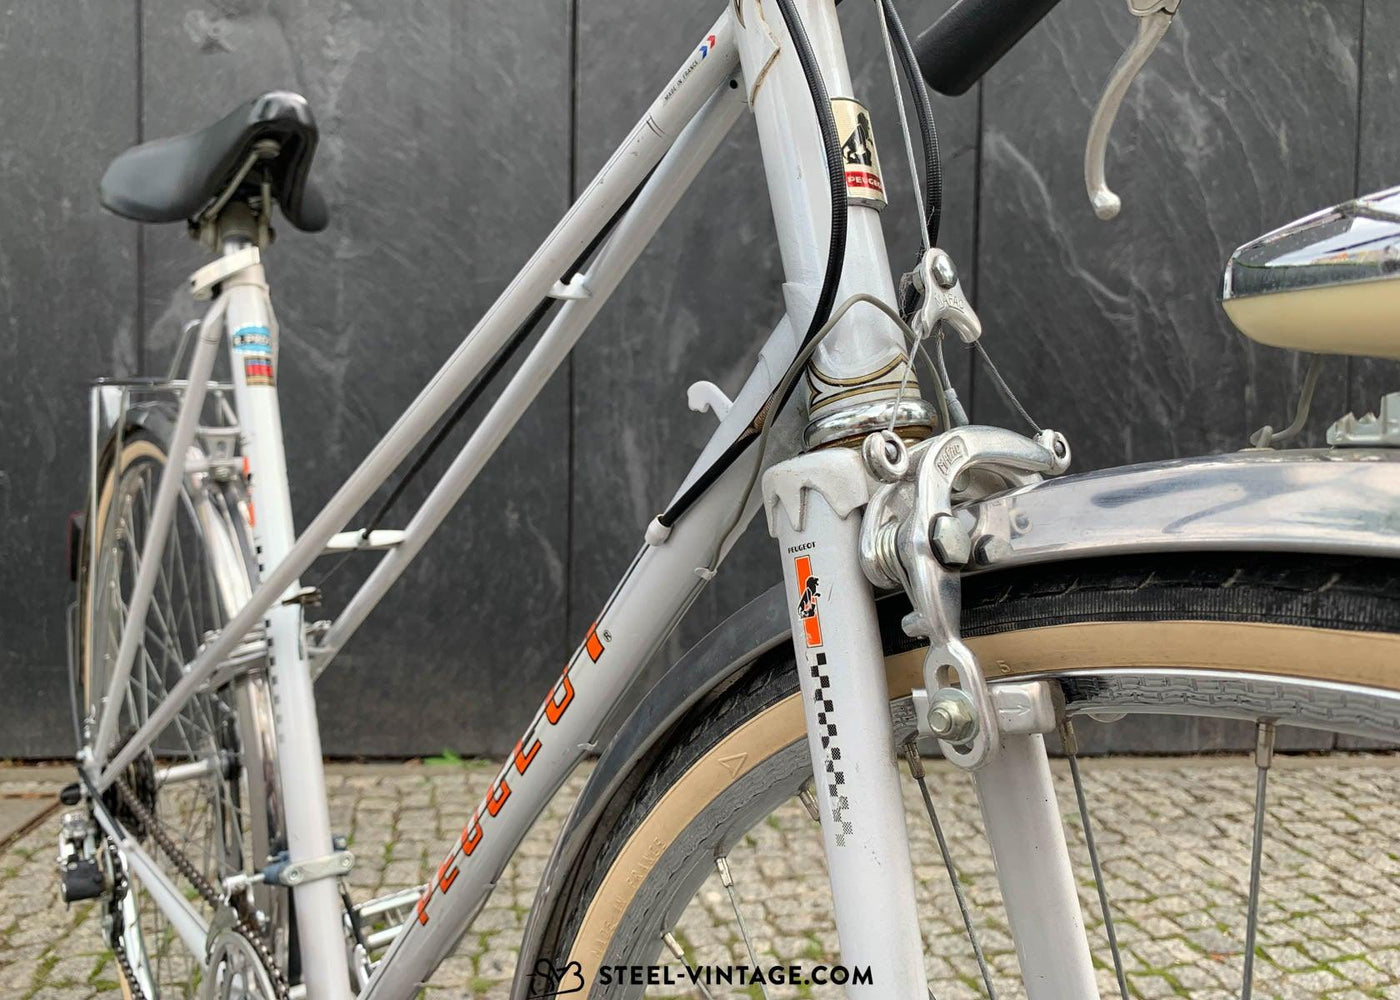 Vintage Peugeot Large Mixte Road Bicycle - Steel Vintage Bikes